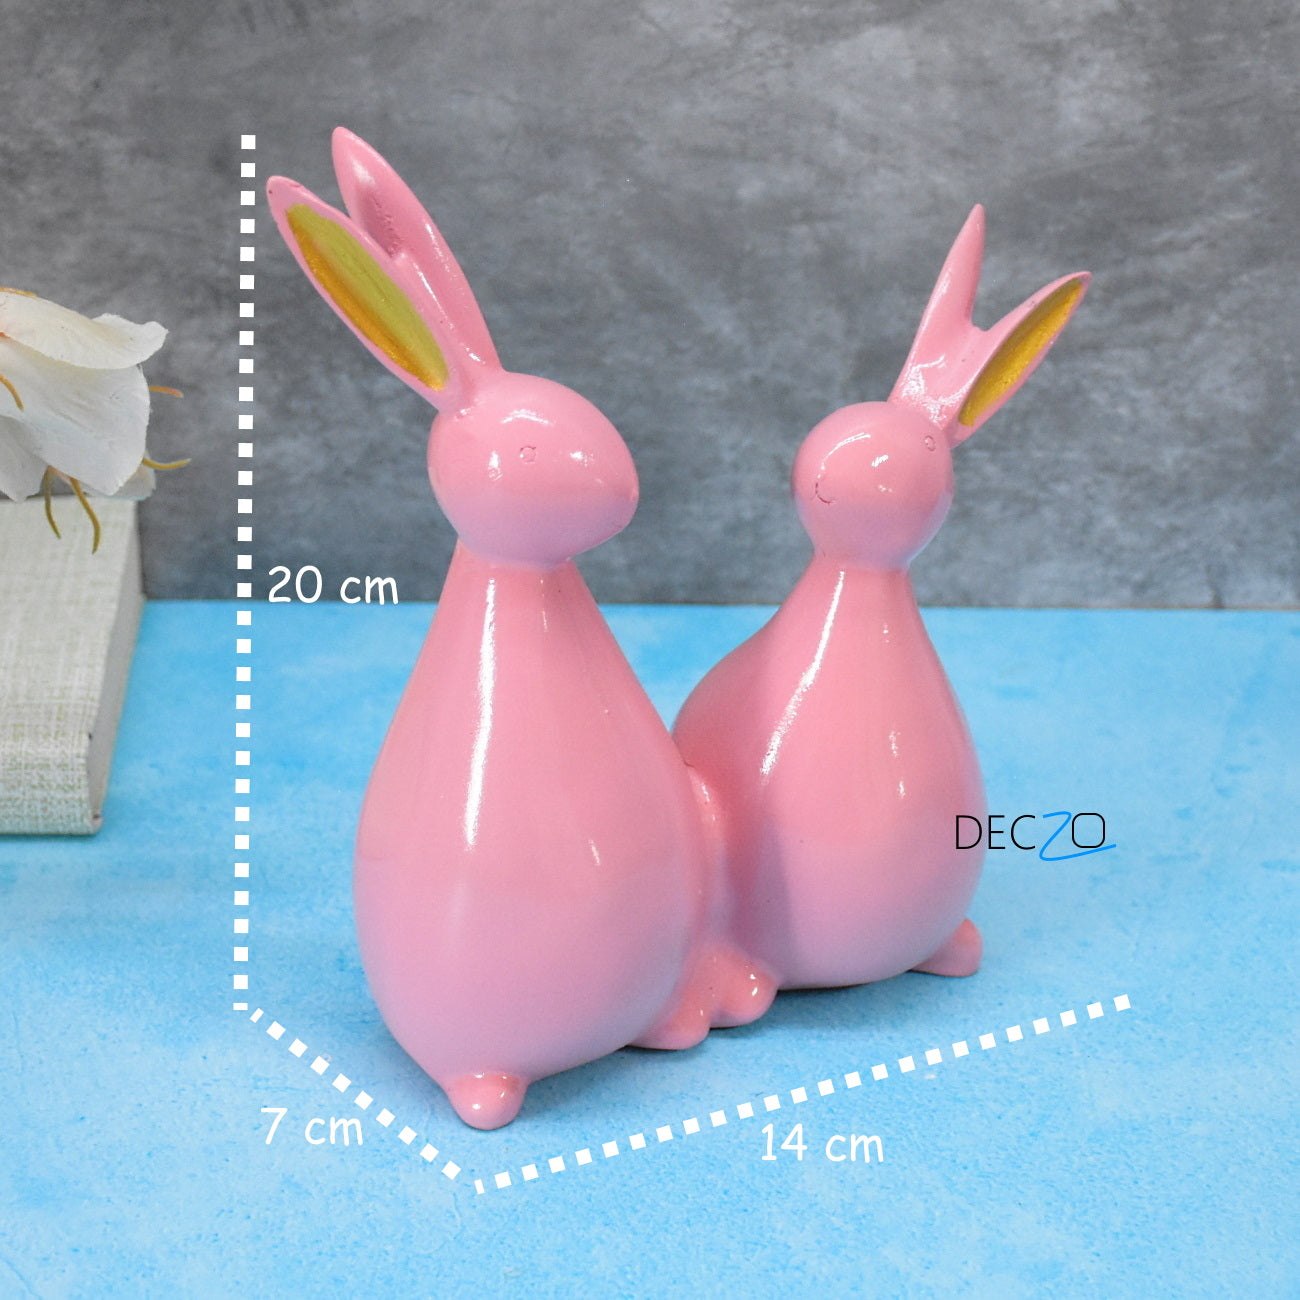 Rabbit Couple Statue for Indoor , Outdoor, Gift - Pink